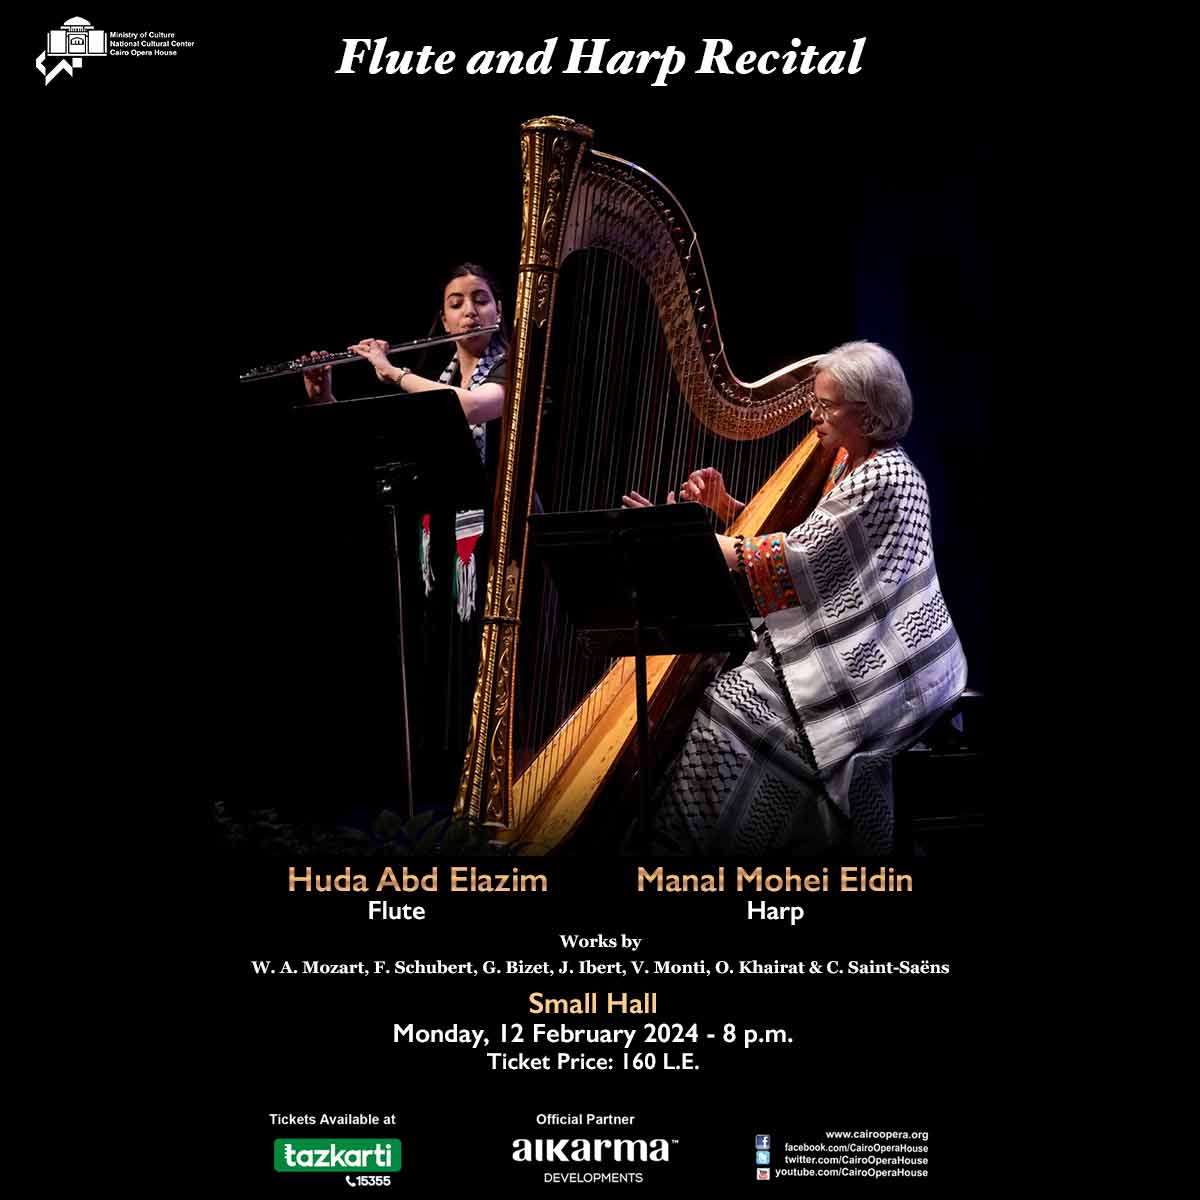 Harp & Flute Recital - Huda Abd Elazim &Manal Mohei ElDin